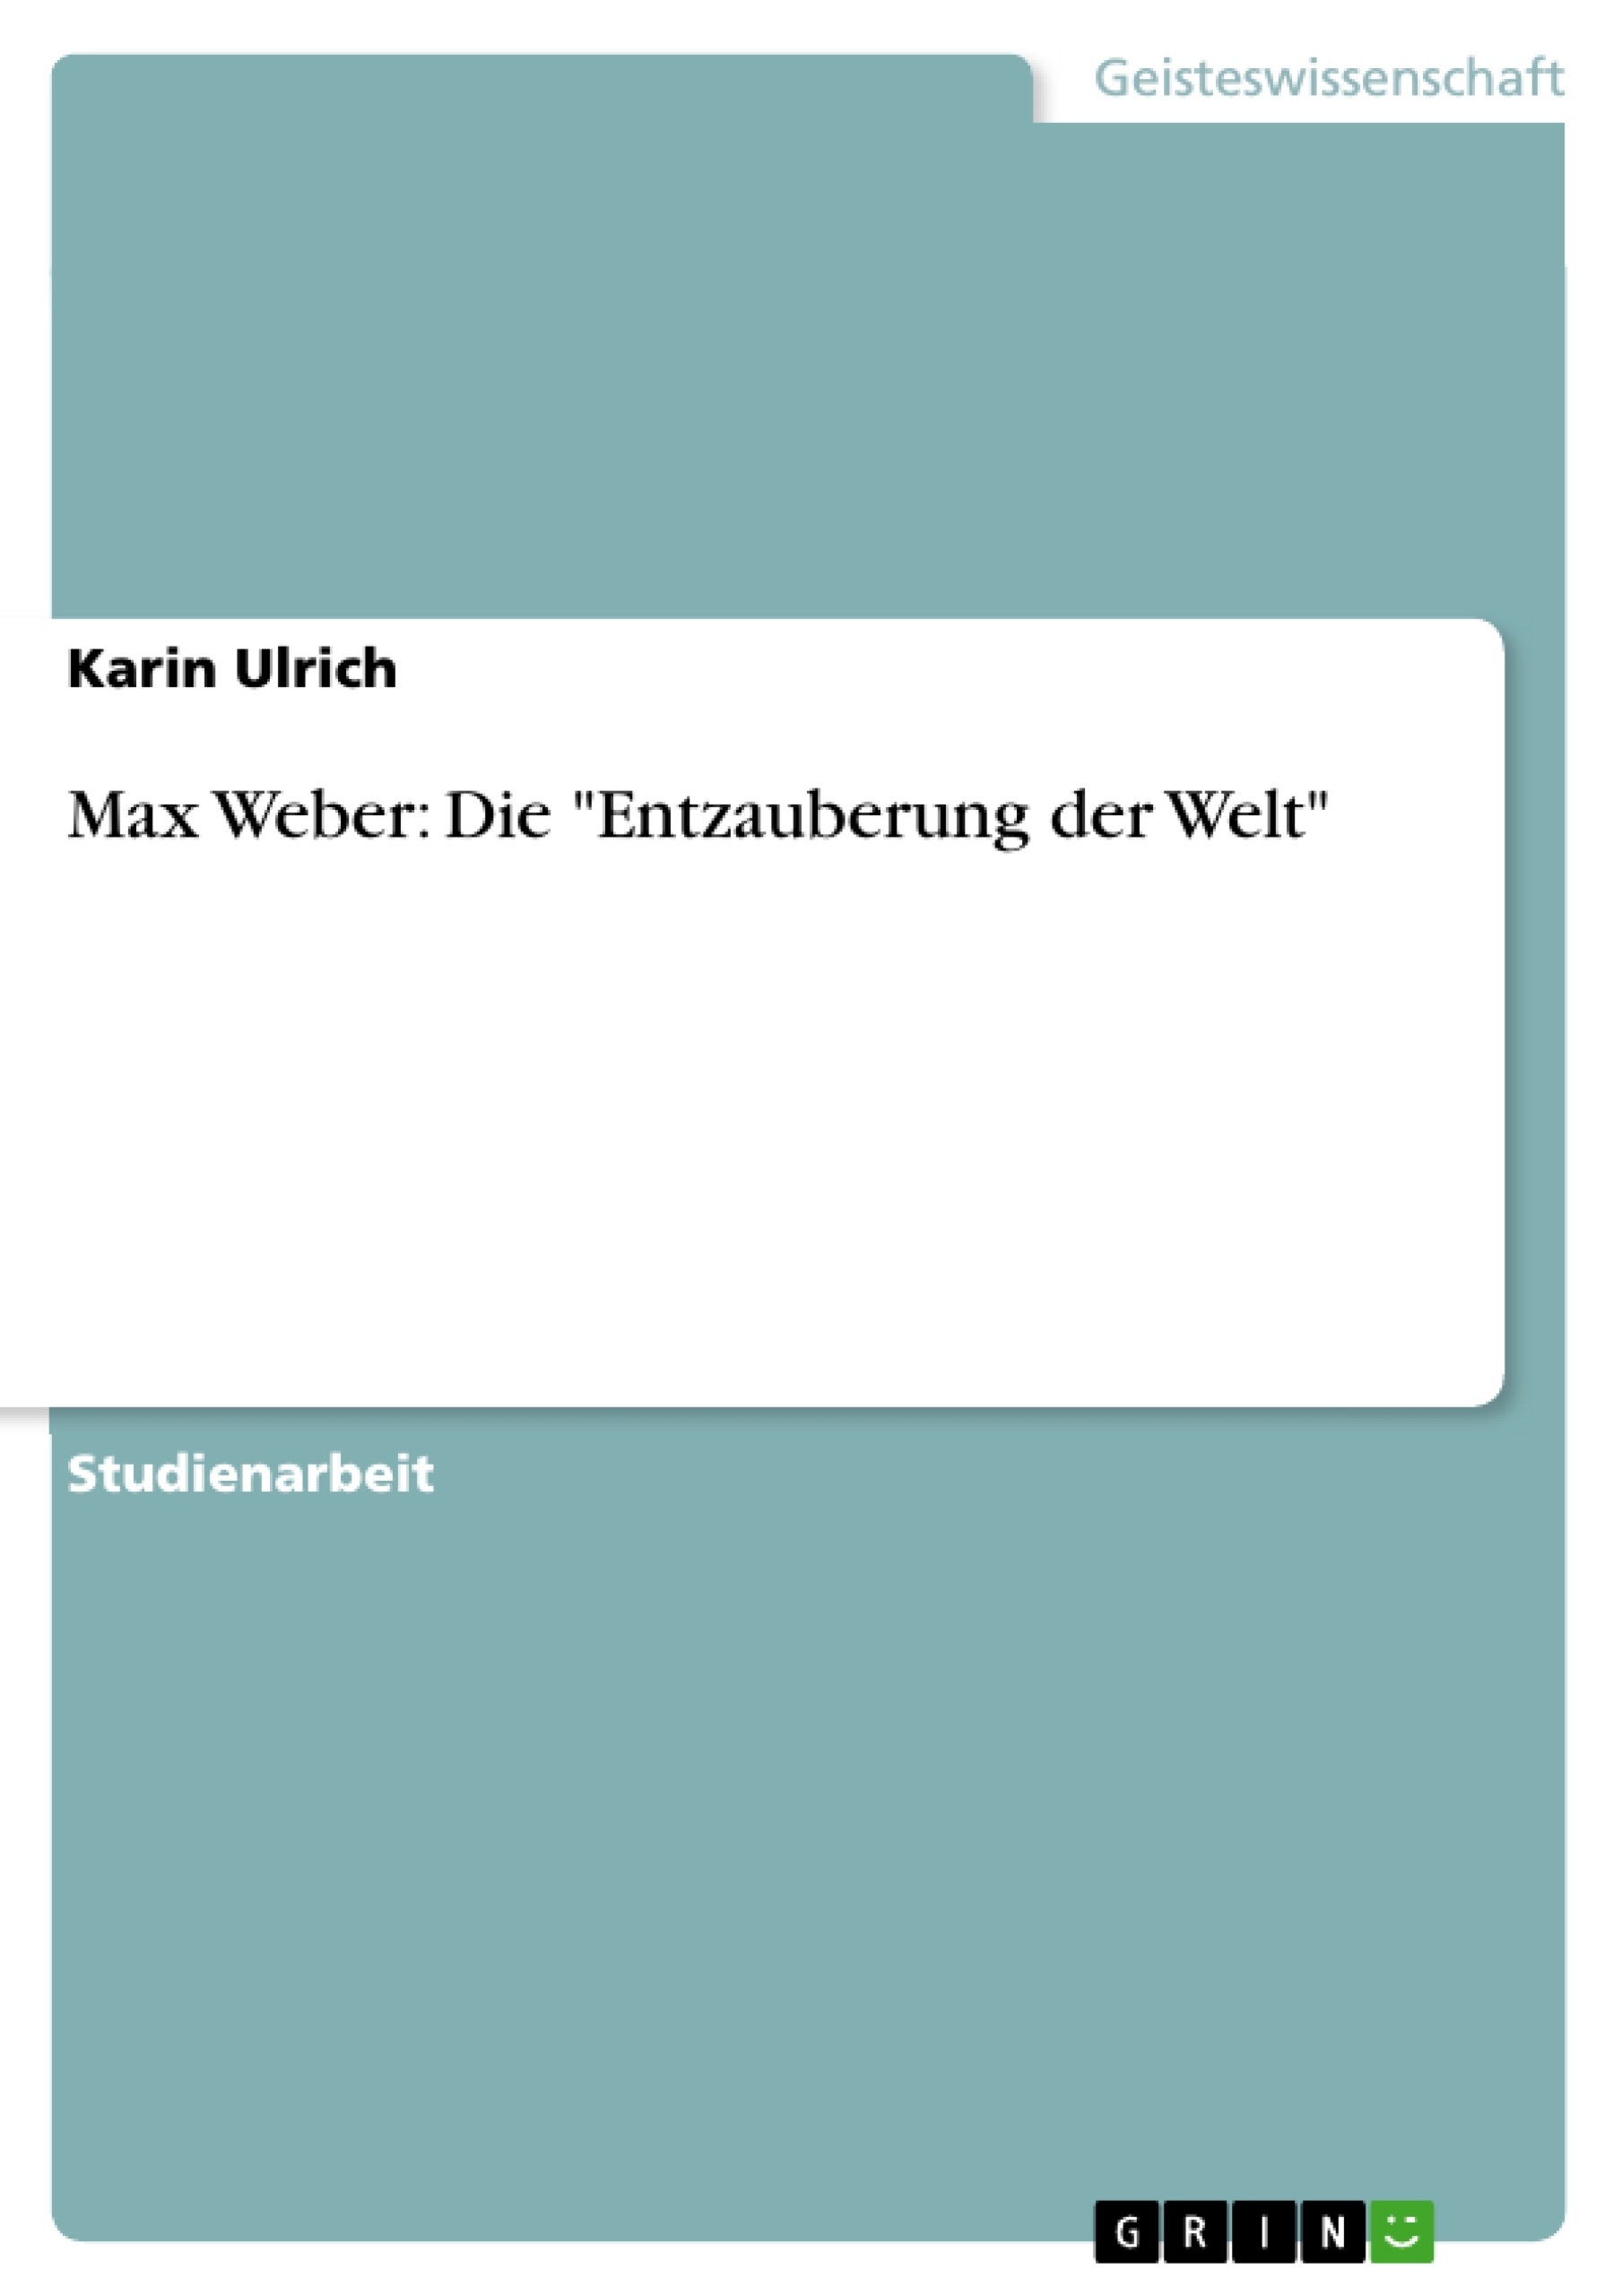 Título: Max Weber: Die "Entzauberung der Welt"